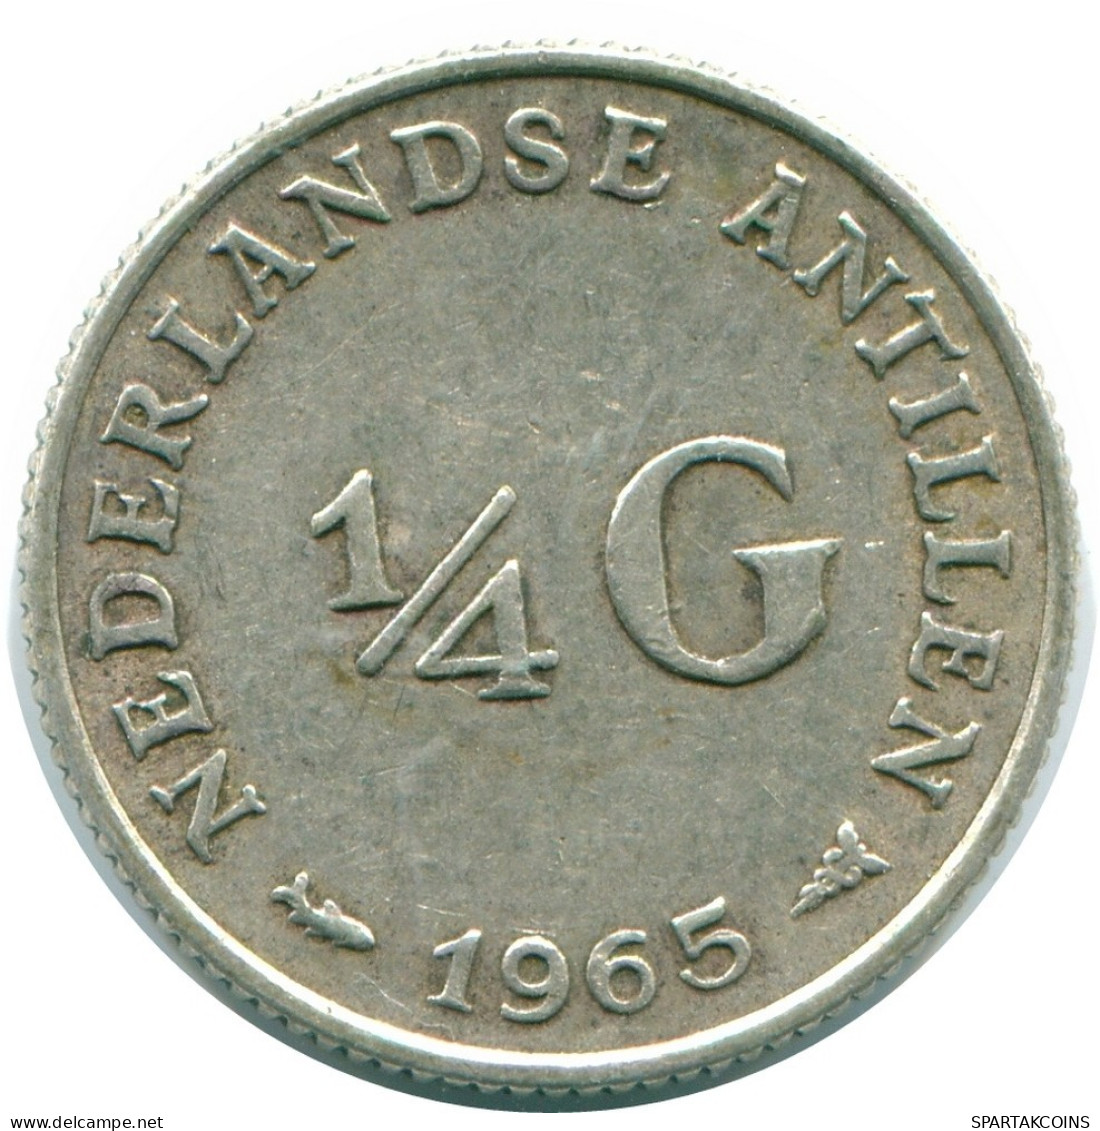 1/4 GULDEN 1965 NIEDERLÄNDISCHE ANTILLEN SILBER Koloniale Münze #NL11331.4.D.A - Antilles Néerlandaises